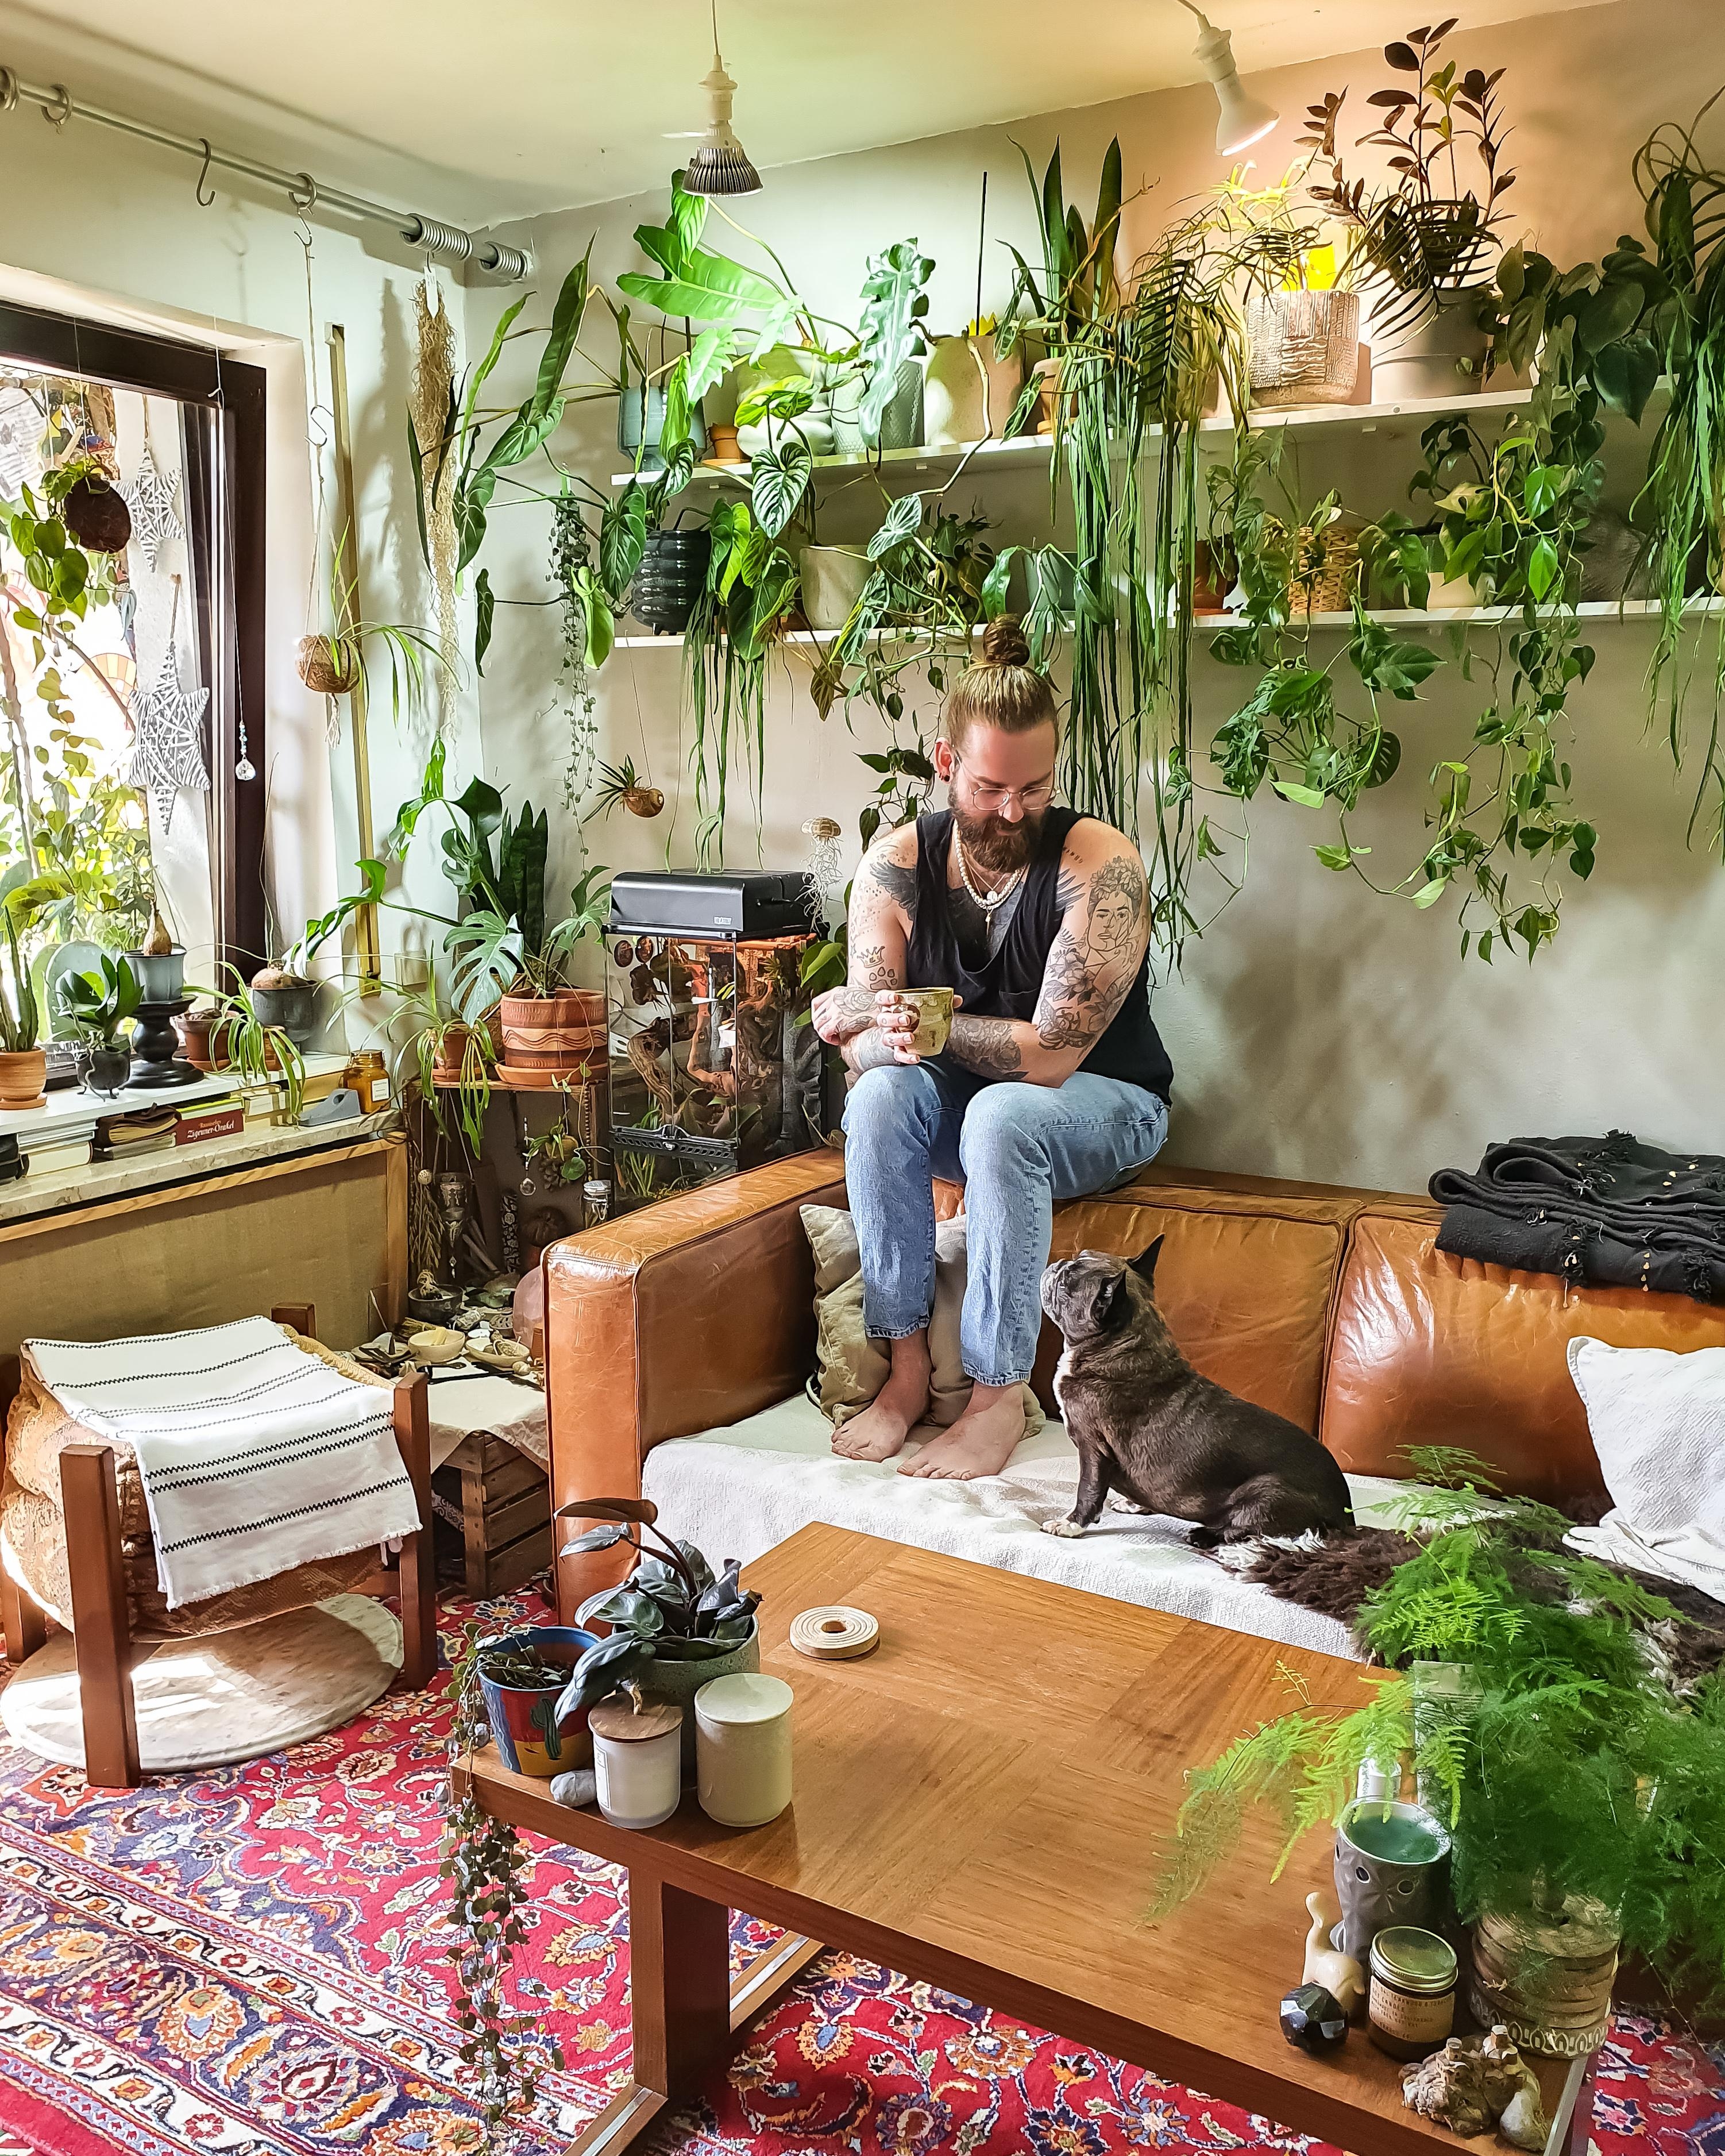 Say hi ✌🏼 #Wohnzimmer #Pflanzen #couchstyle #Couch #Sofa #Teppich #Tisch #couchtisch #boho #hippie